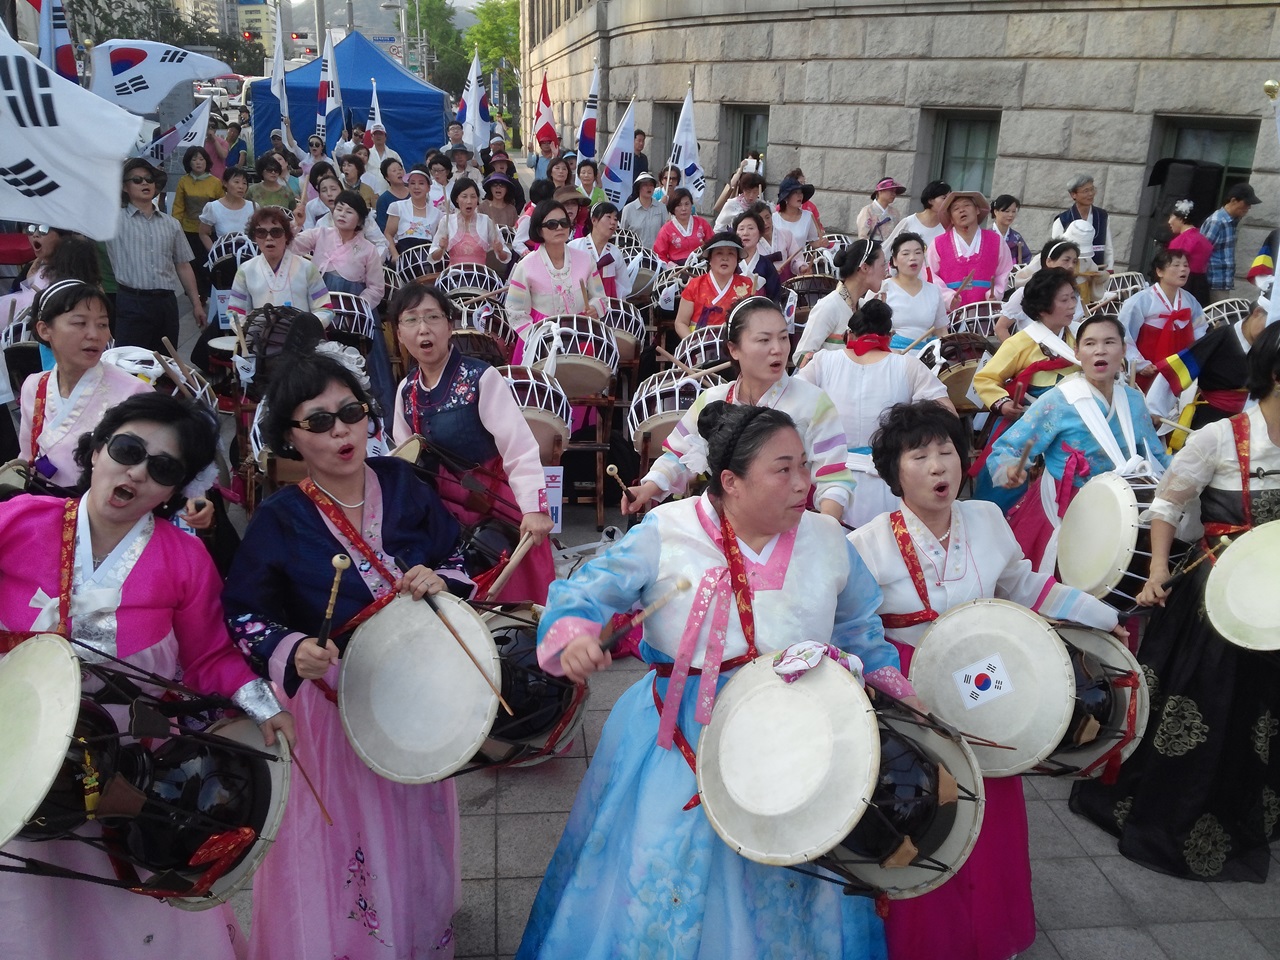 퀴어 축제 반대 집회 참가자들이 난타 공연을 하고 있다.